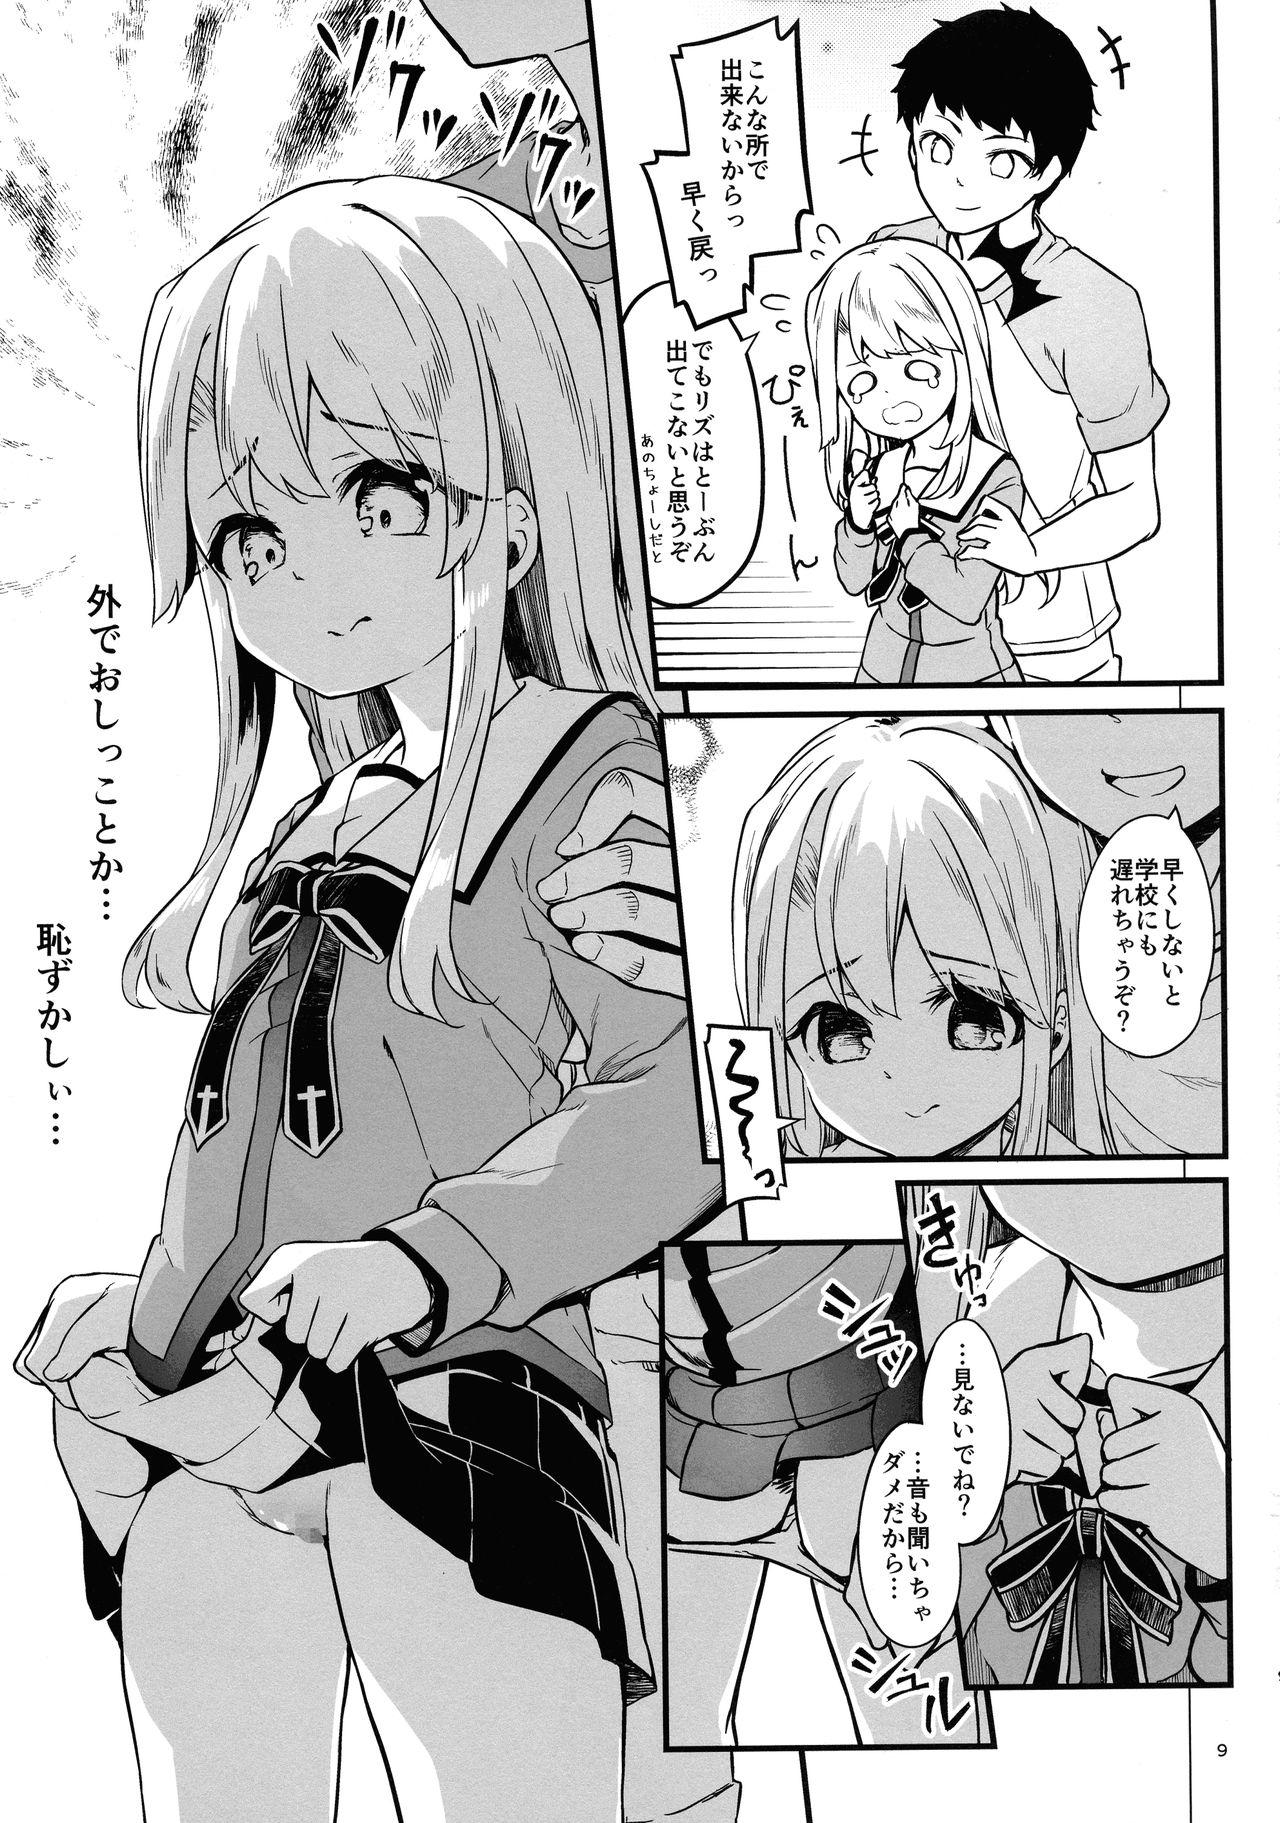 Amatoriale Illyasviel no Onii-chan wa Isogashii - Fate kaleid liner prisma illya Slut - Page 9